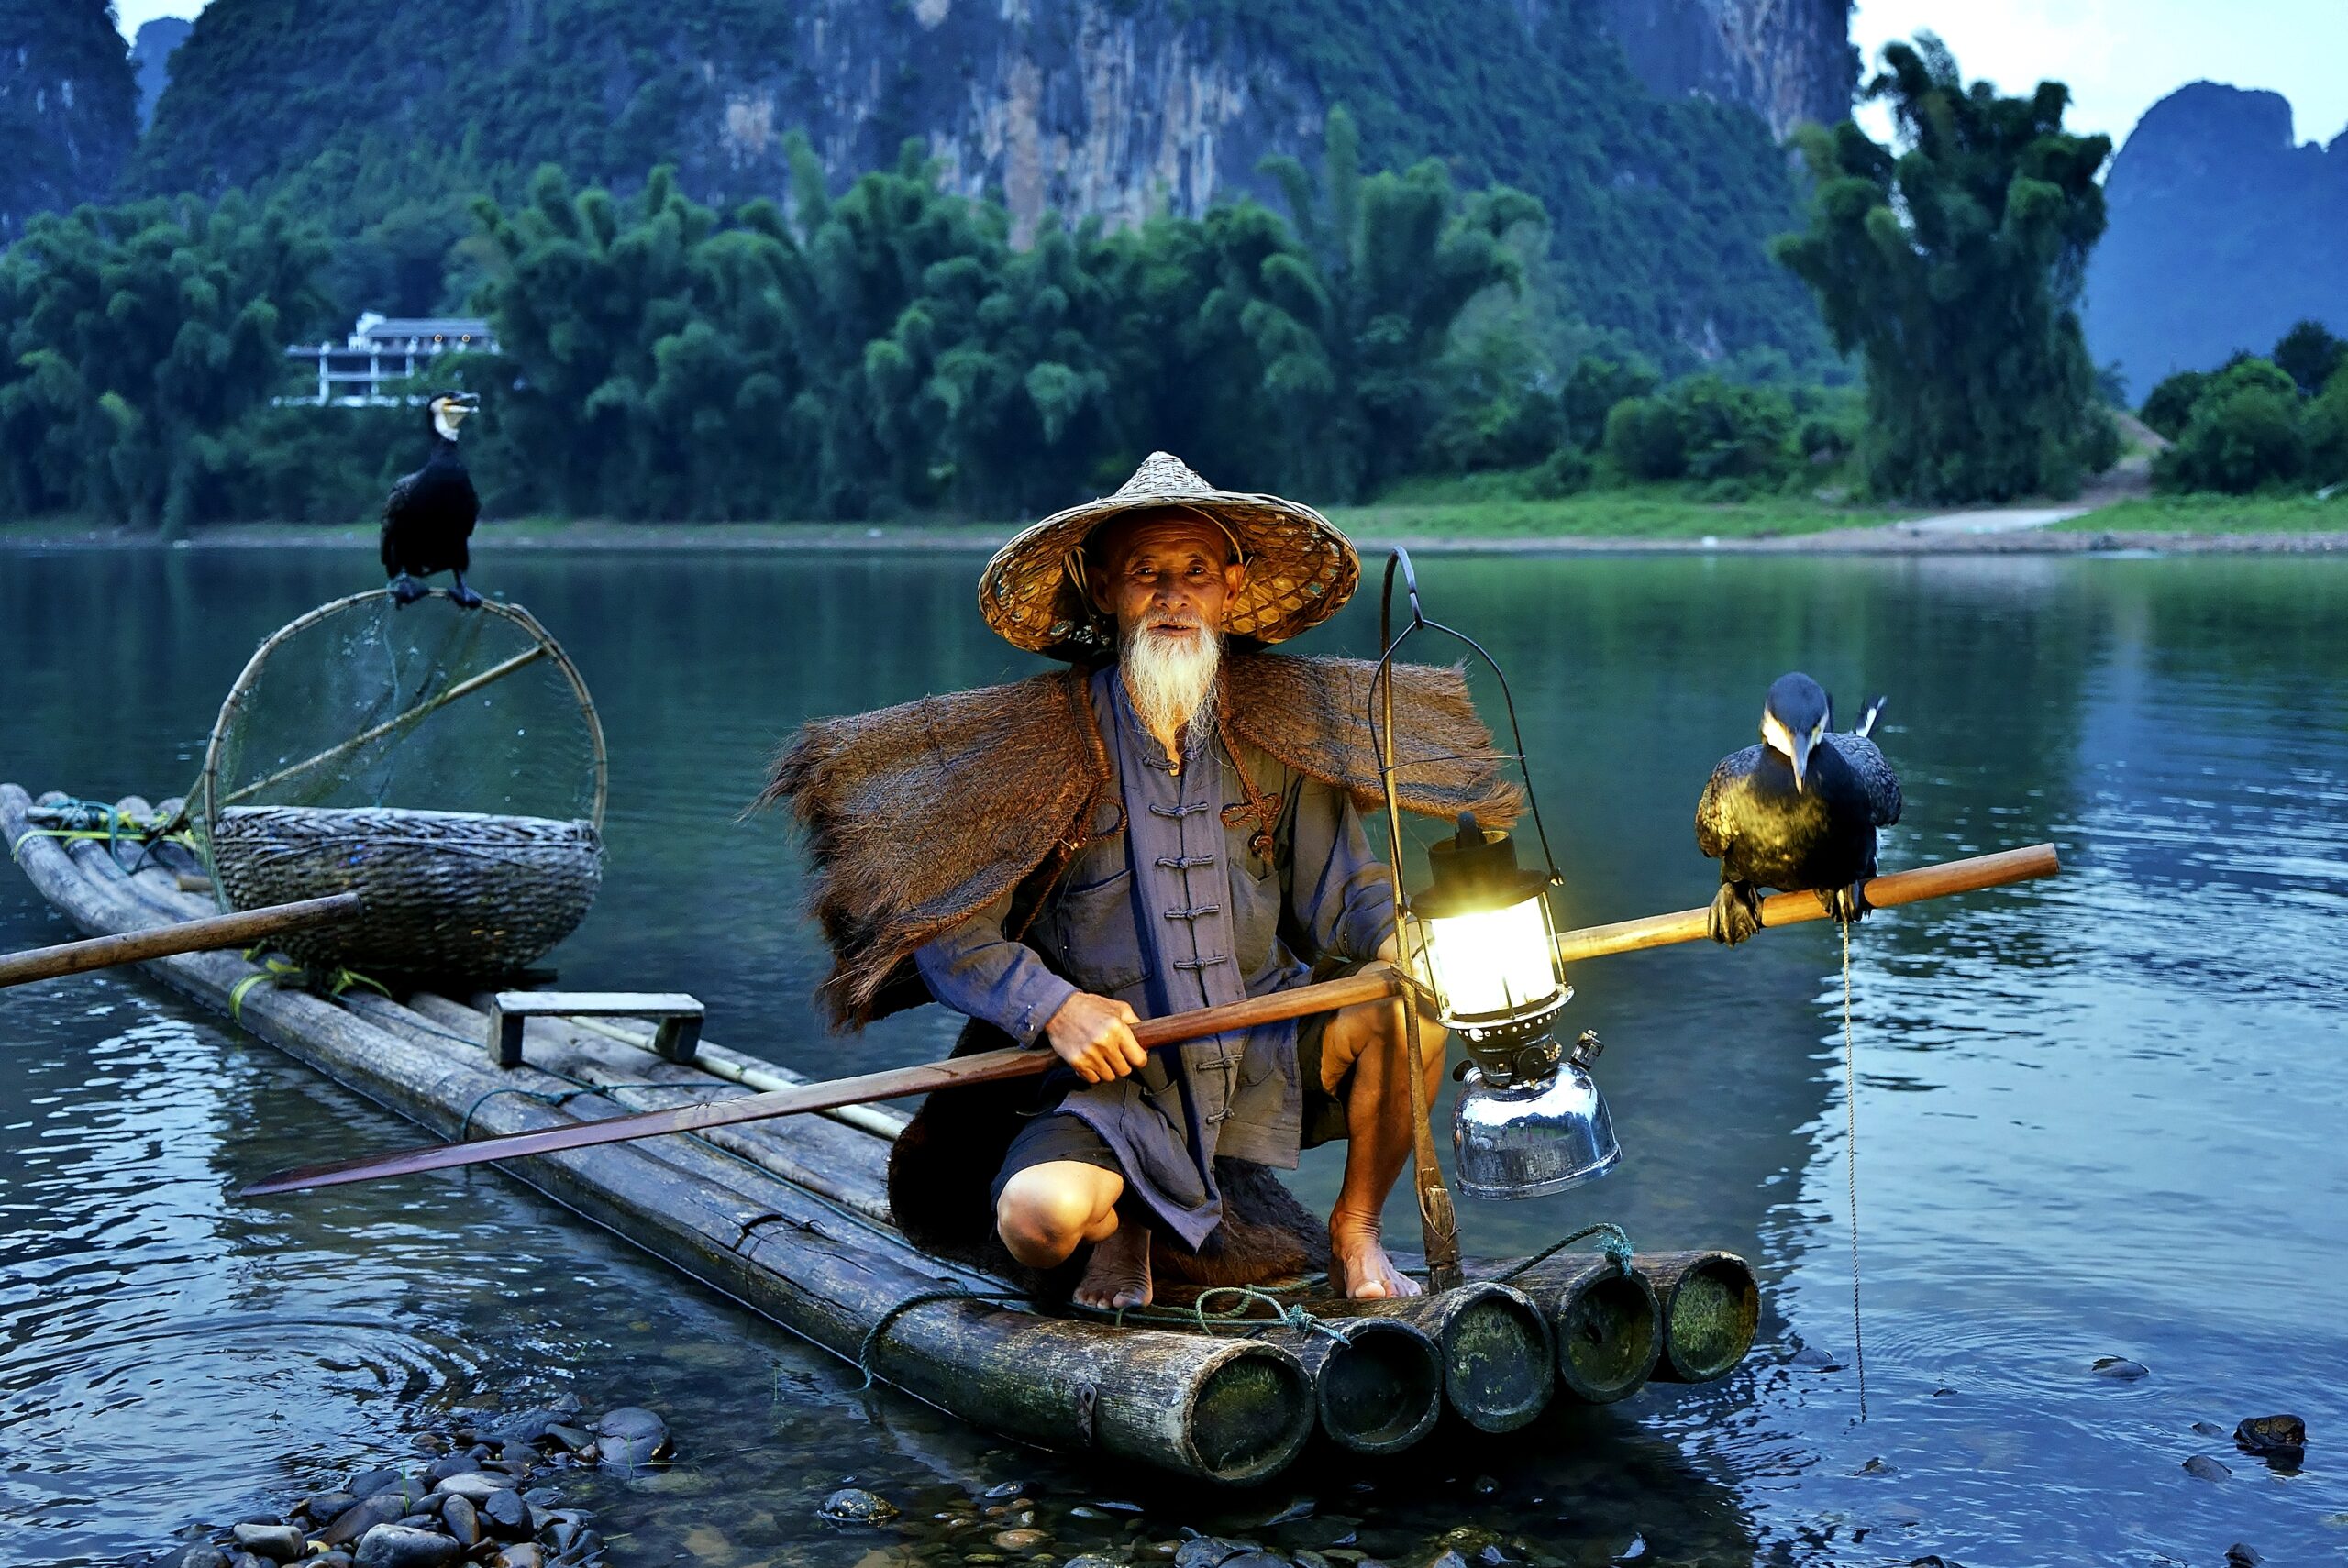 Cormorant fisherman "The Younger Huang (yellow)" in sunset at Li River, Yangshuo, Guangxi, China